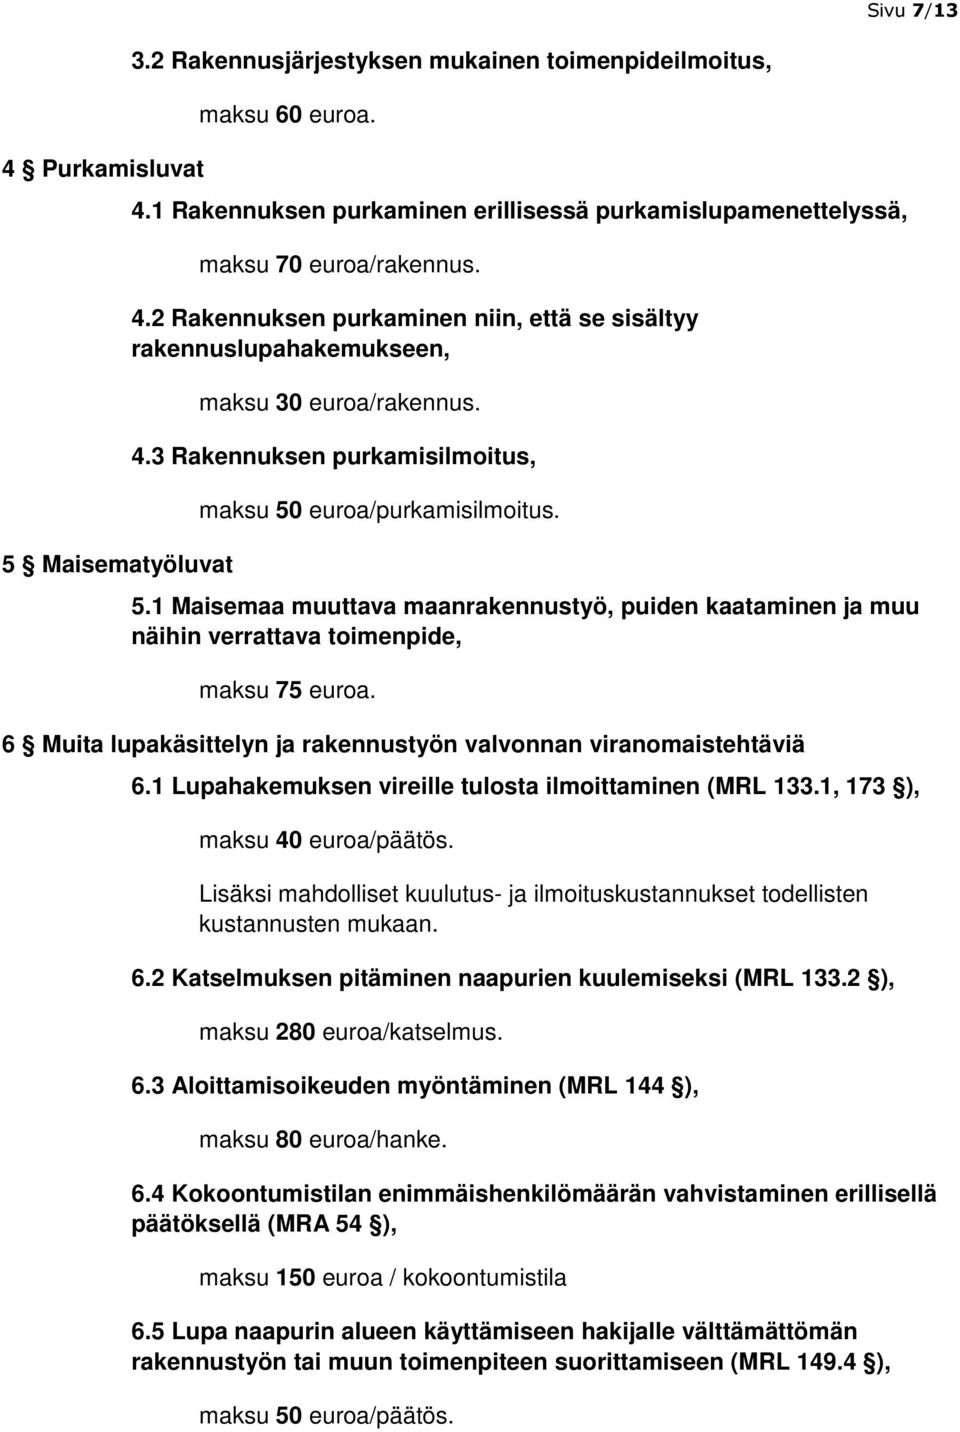 euroa/purkamisilmoitus. 5.1 Maisemaa muuttava maanrakennustyö, puiden kaataminen ja muu näihin verrattava toimenpide, maksu 75 euroa.